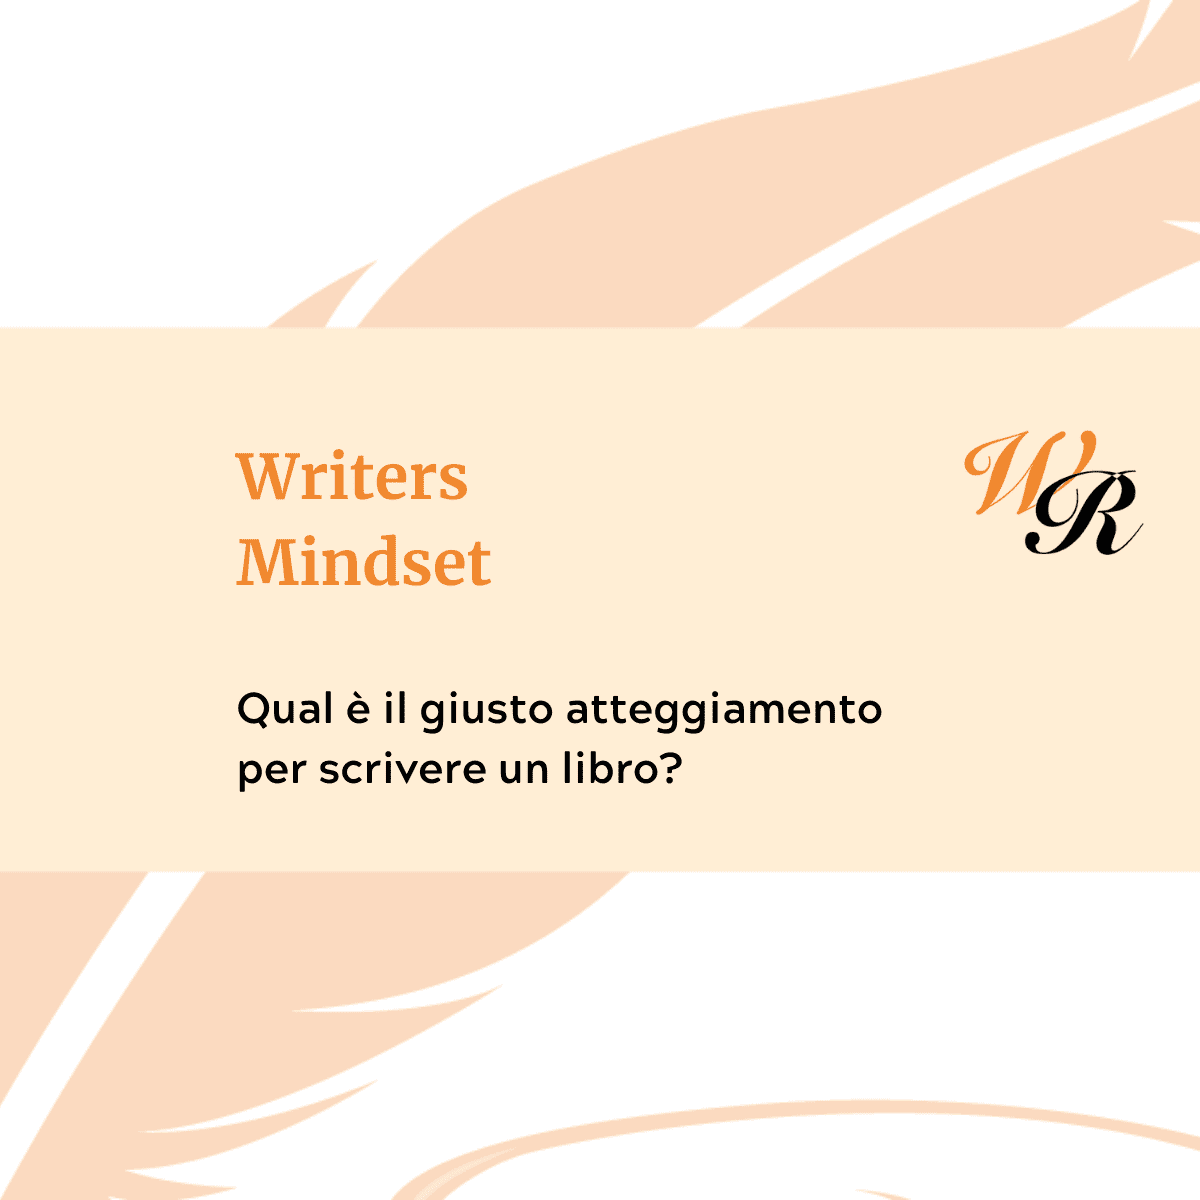 Writers Mindset Qual è il giusto atteggiamento per scrivere un libro?